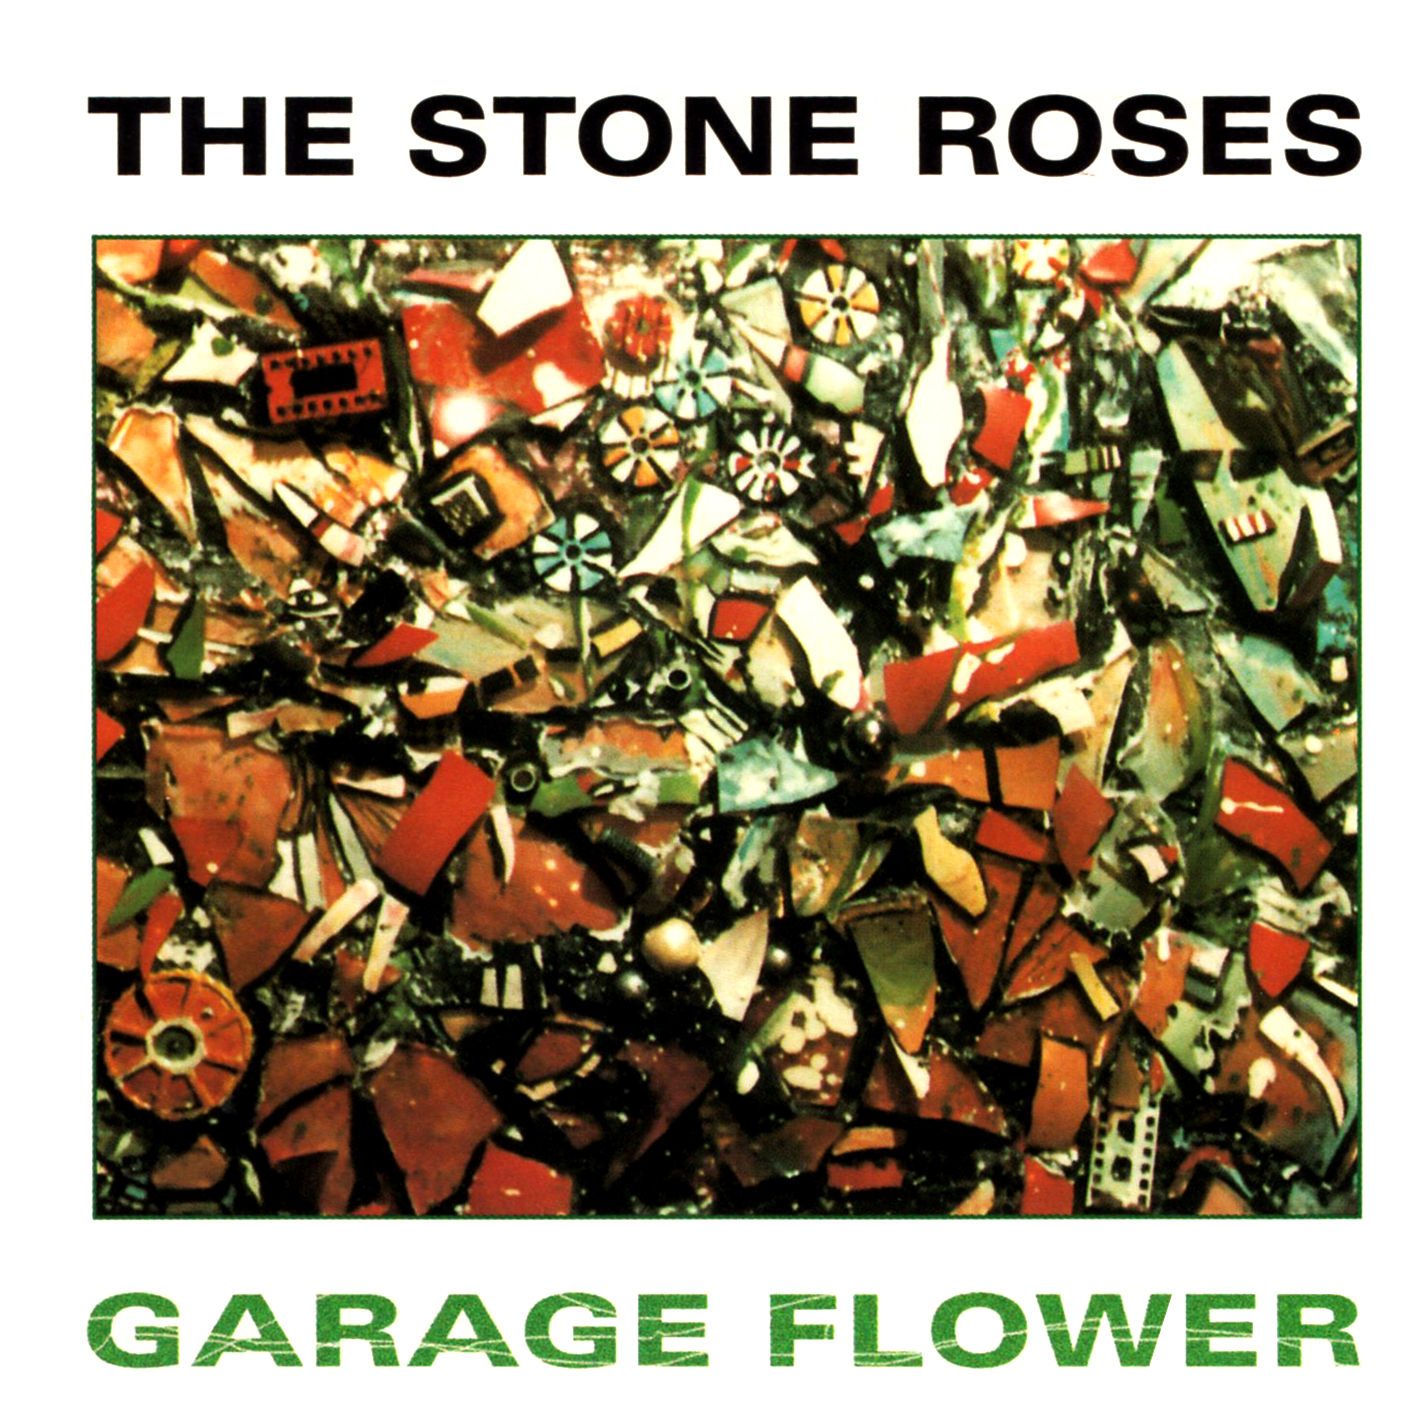 Stone Roses (ストーン・ローゼス) 非公式コンピレーション・アルバム『GARAGE FLOWER (ガレージ・フラワー)』(1996年11月発売) 高画質CDジャケット画像